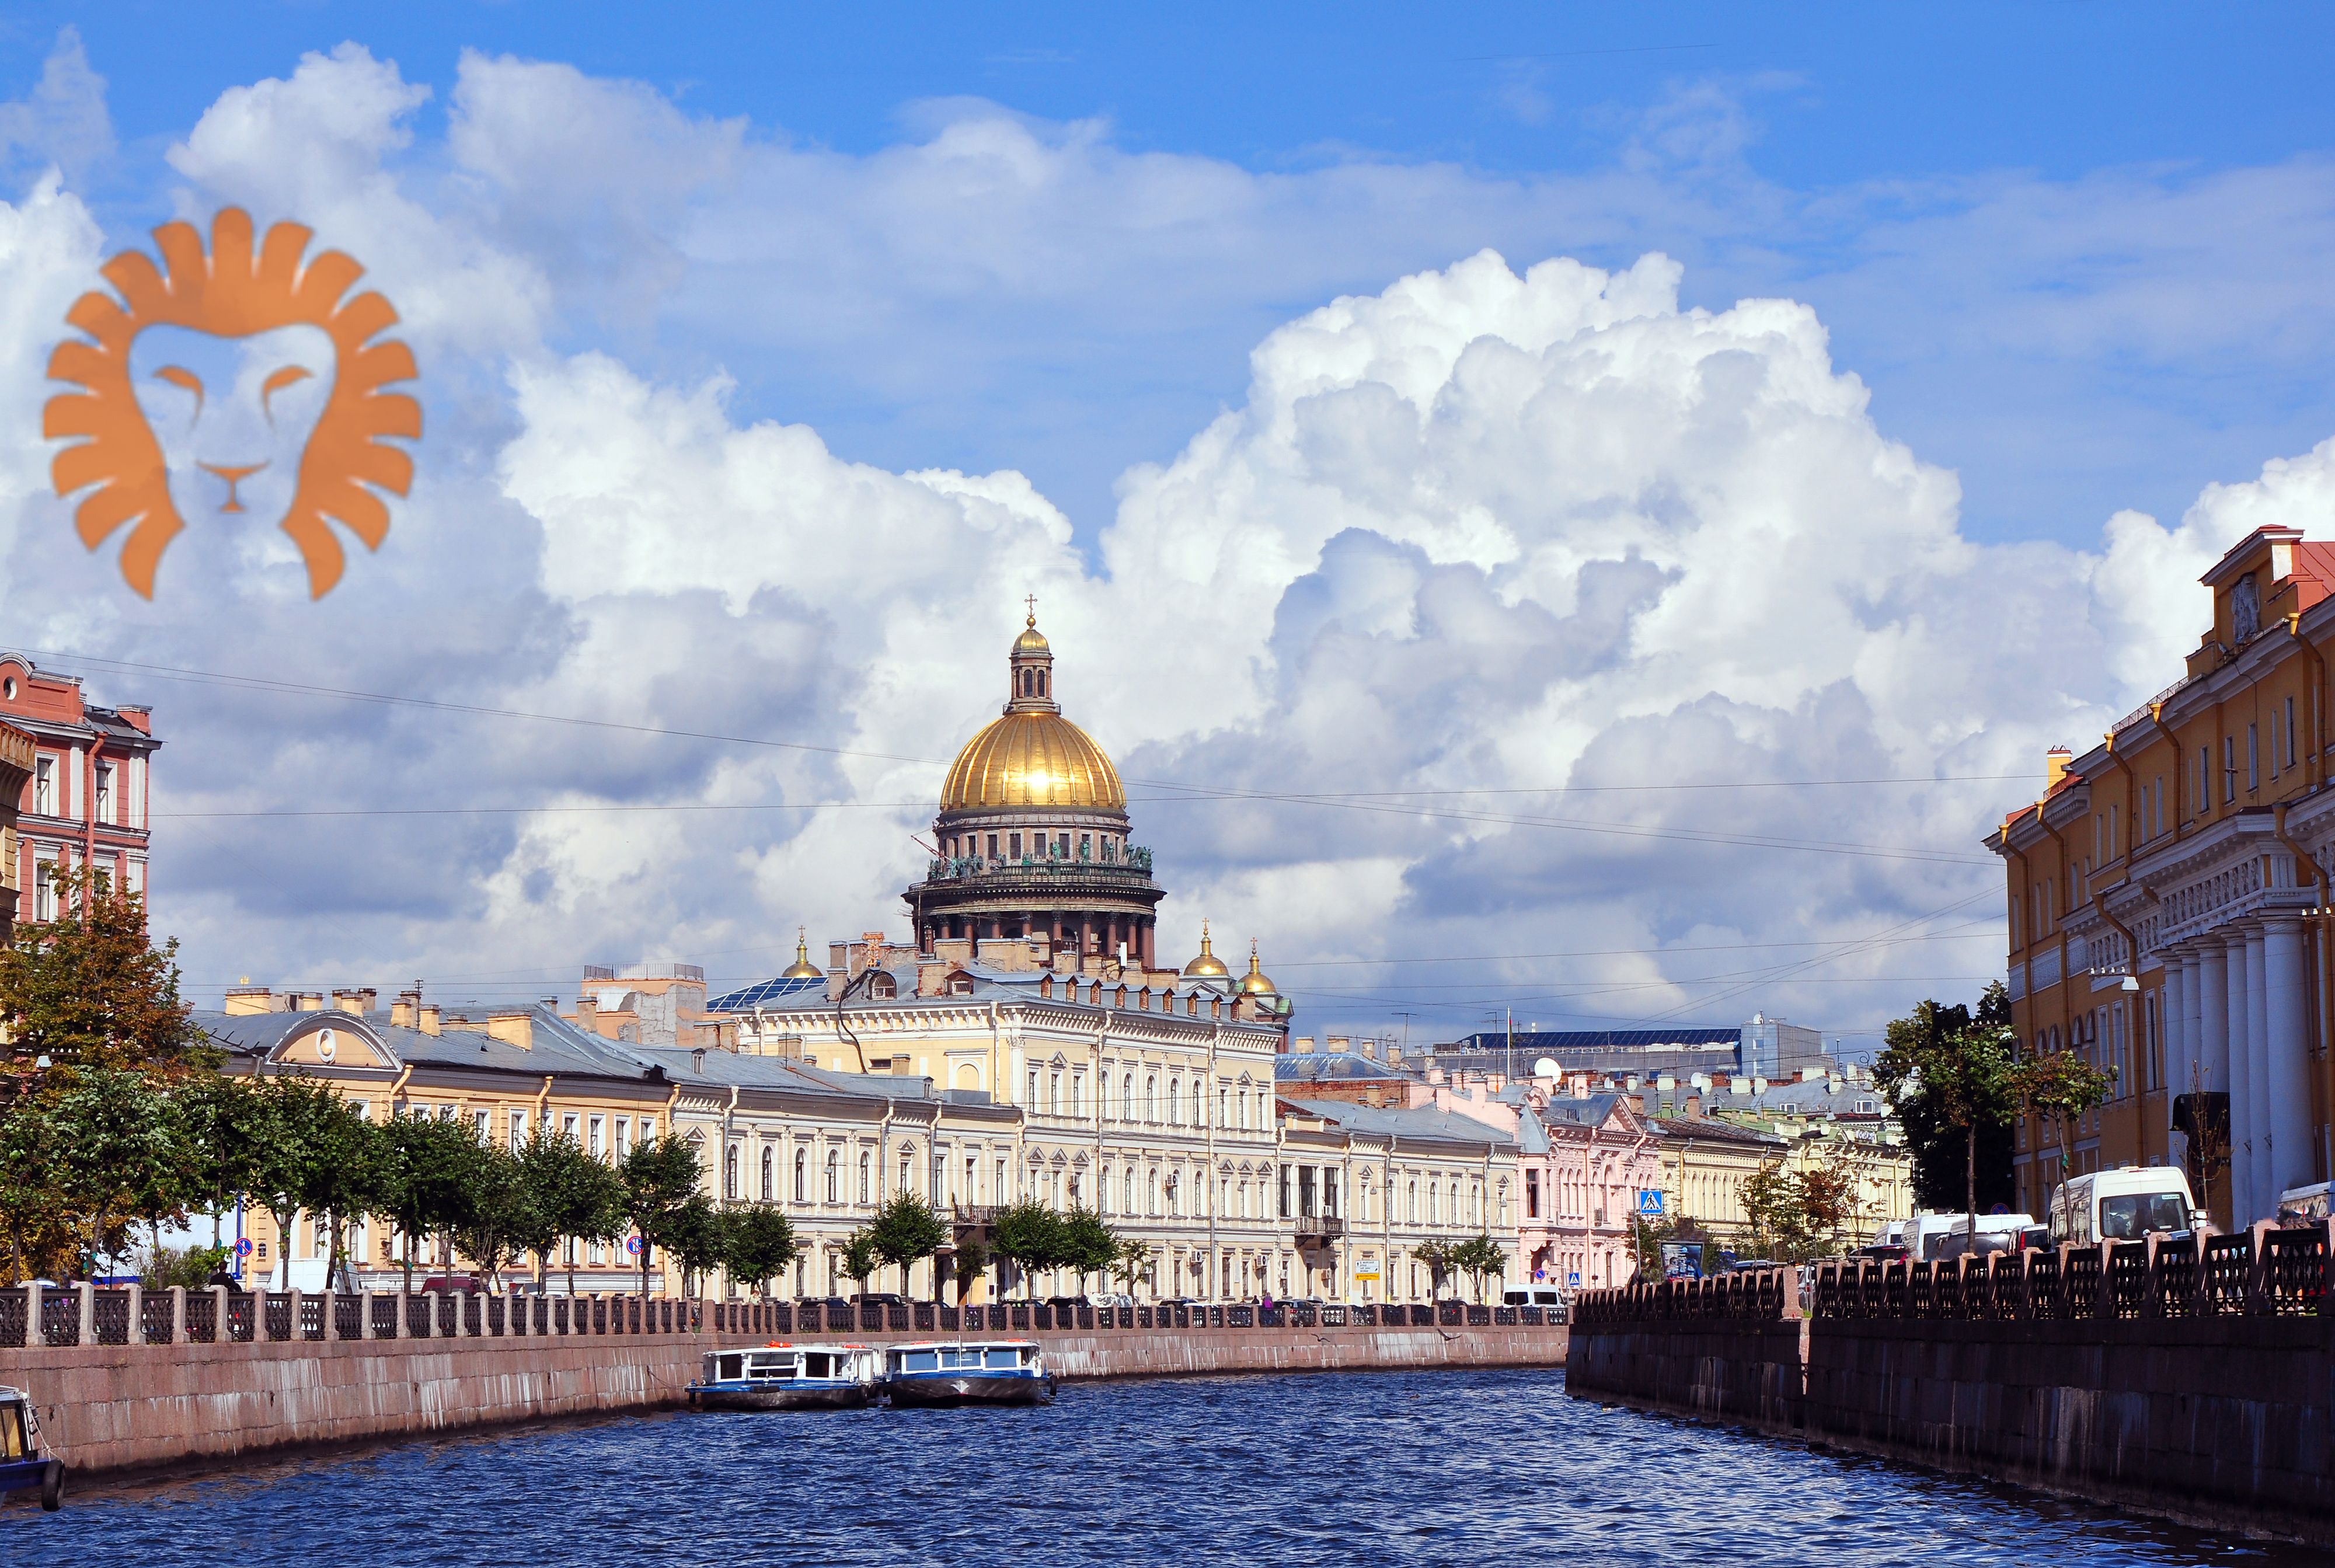 TFG Insurance застраховал залоговое имущество на 63 млн. руб. в здании 1912 г.п. в историческом центре г. Санкт-Петербурга